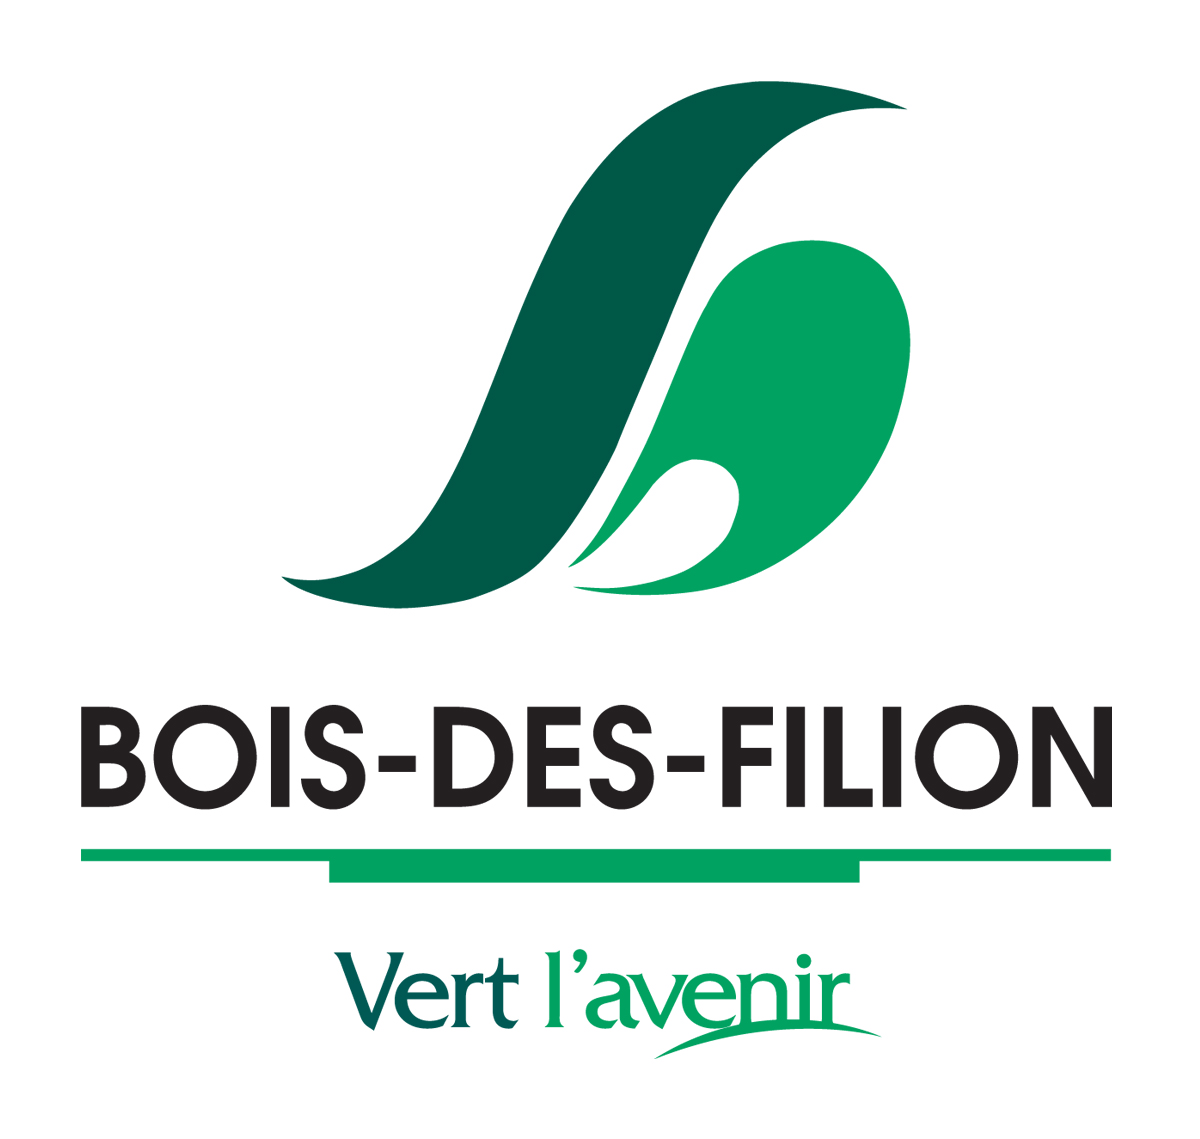 Bois-des-Filion